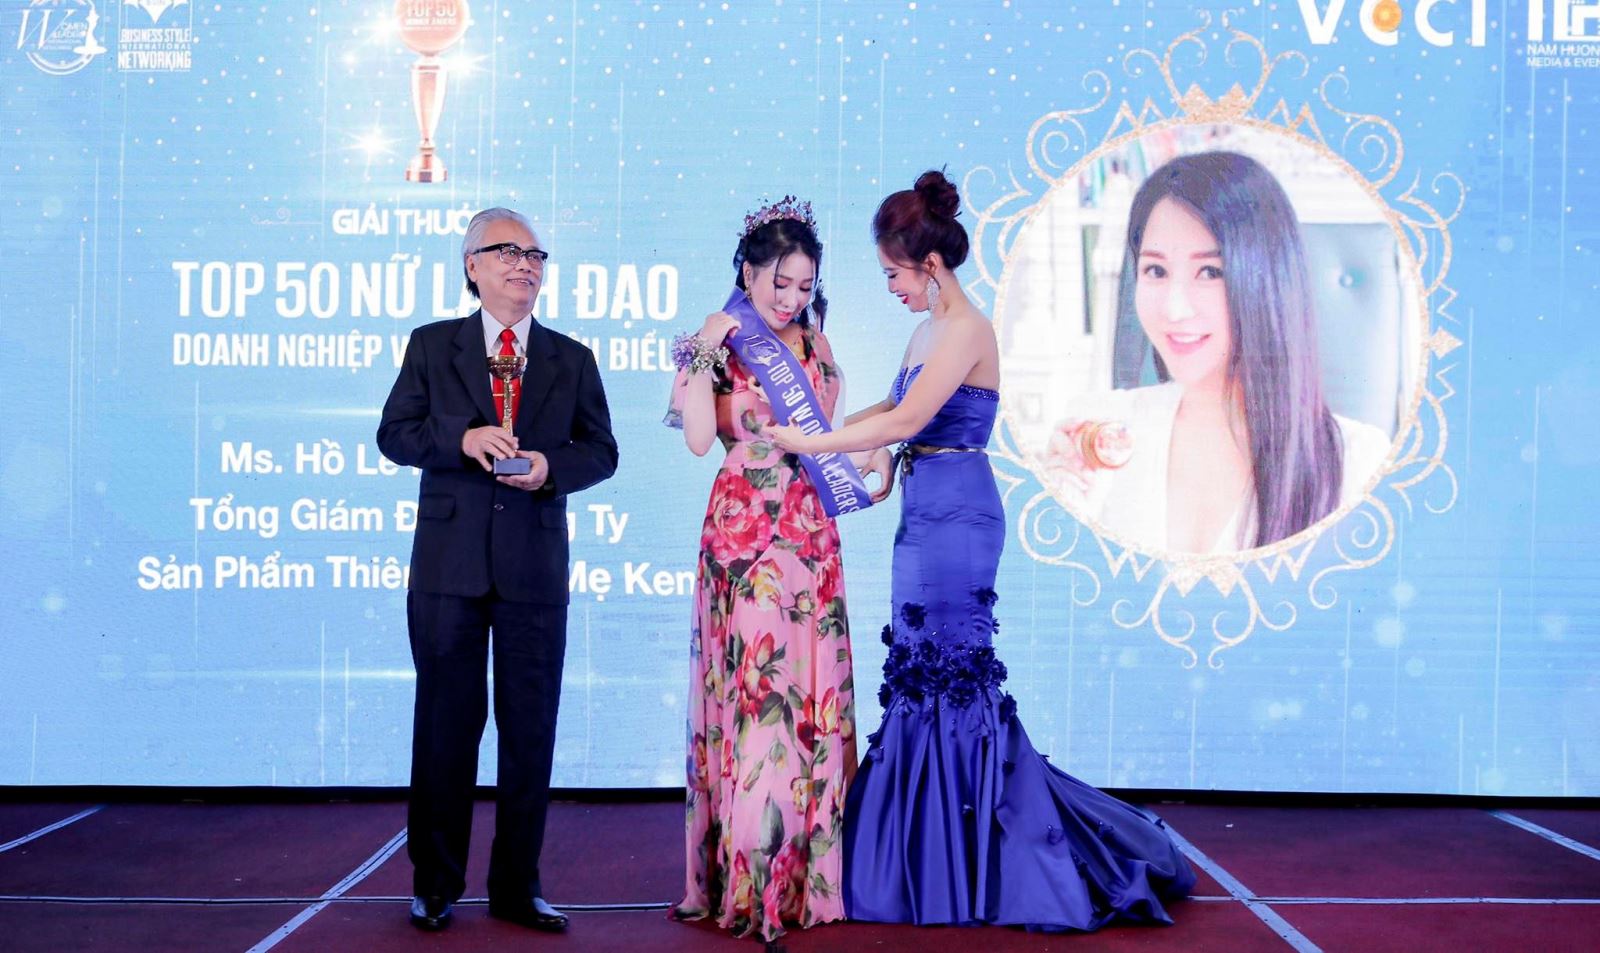 Nữ hoàng Doanh nhân Đất Việt Hồ Lê Minh Châu nhận giải thưởng Top 50 Nữ lãnh đạo Doanh nghiệp Việt Nam tiêu biểu 2020